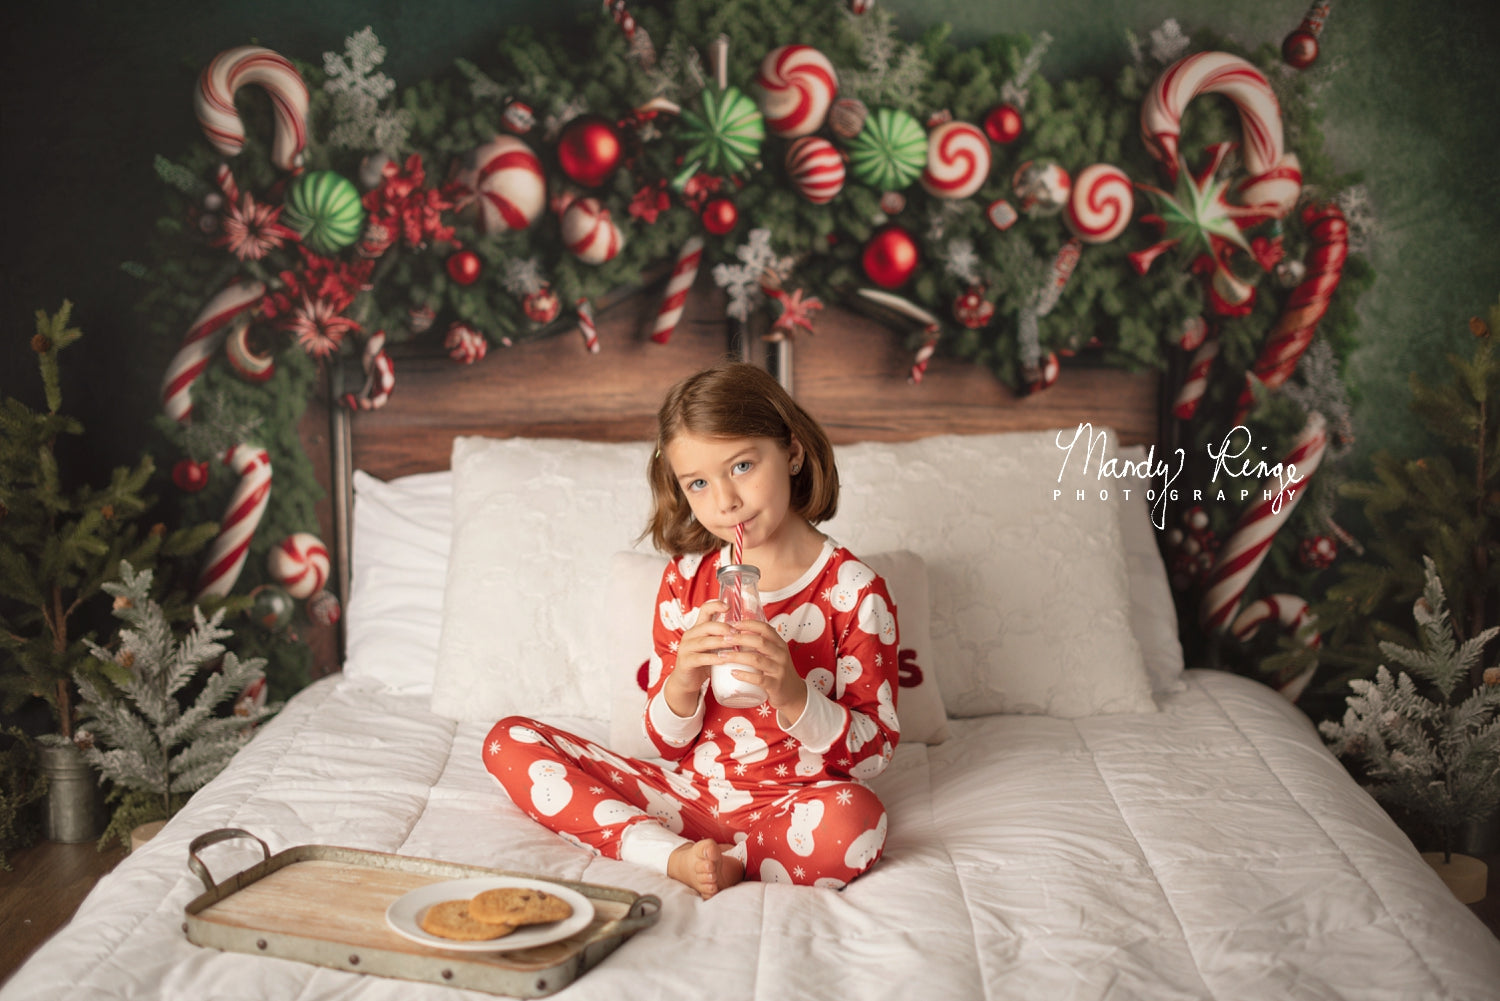 Kate Noël Bonbons Tête de lit Toile de fond conçue par Mandy Ringe Photographie